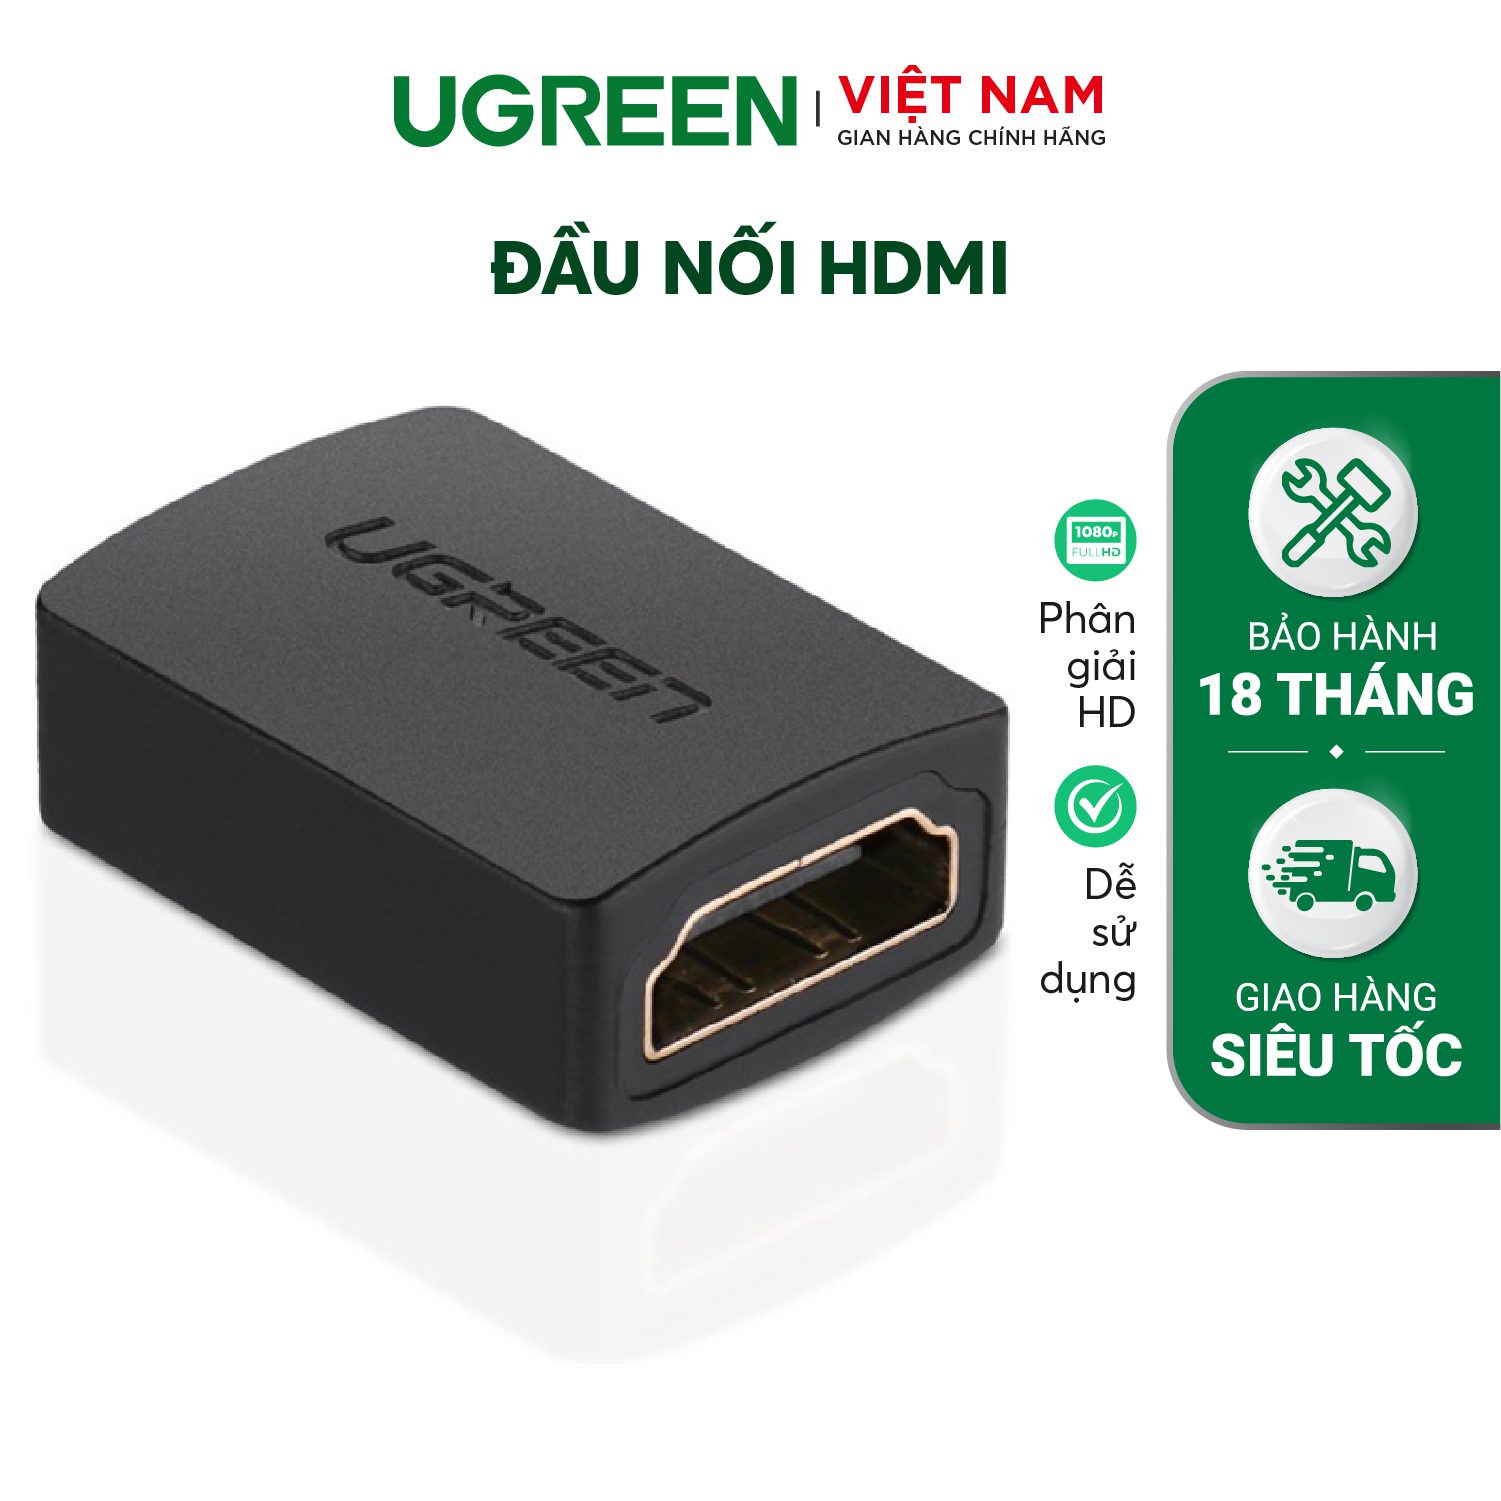 Đầu nối HDMI cái sang HDMI cái UGREEN 20107 – Ugreen Việt Nam